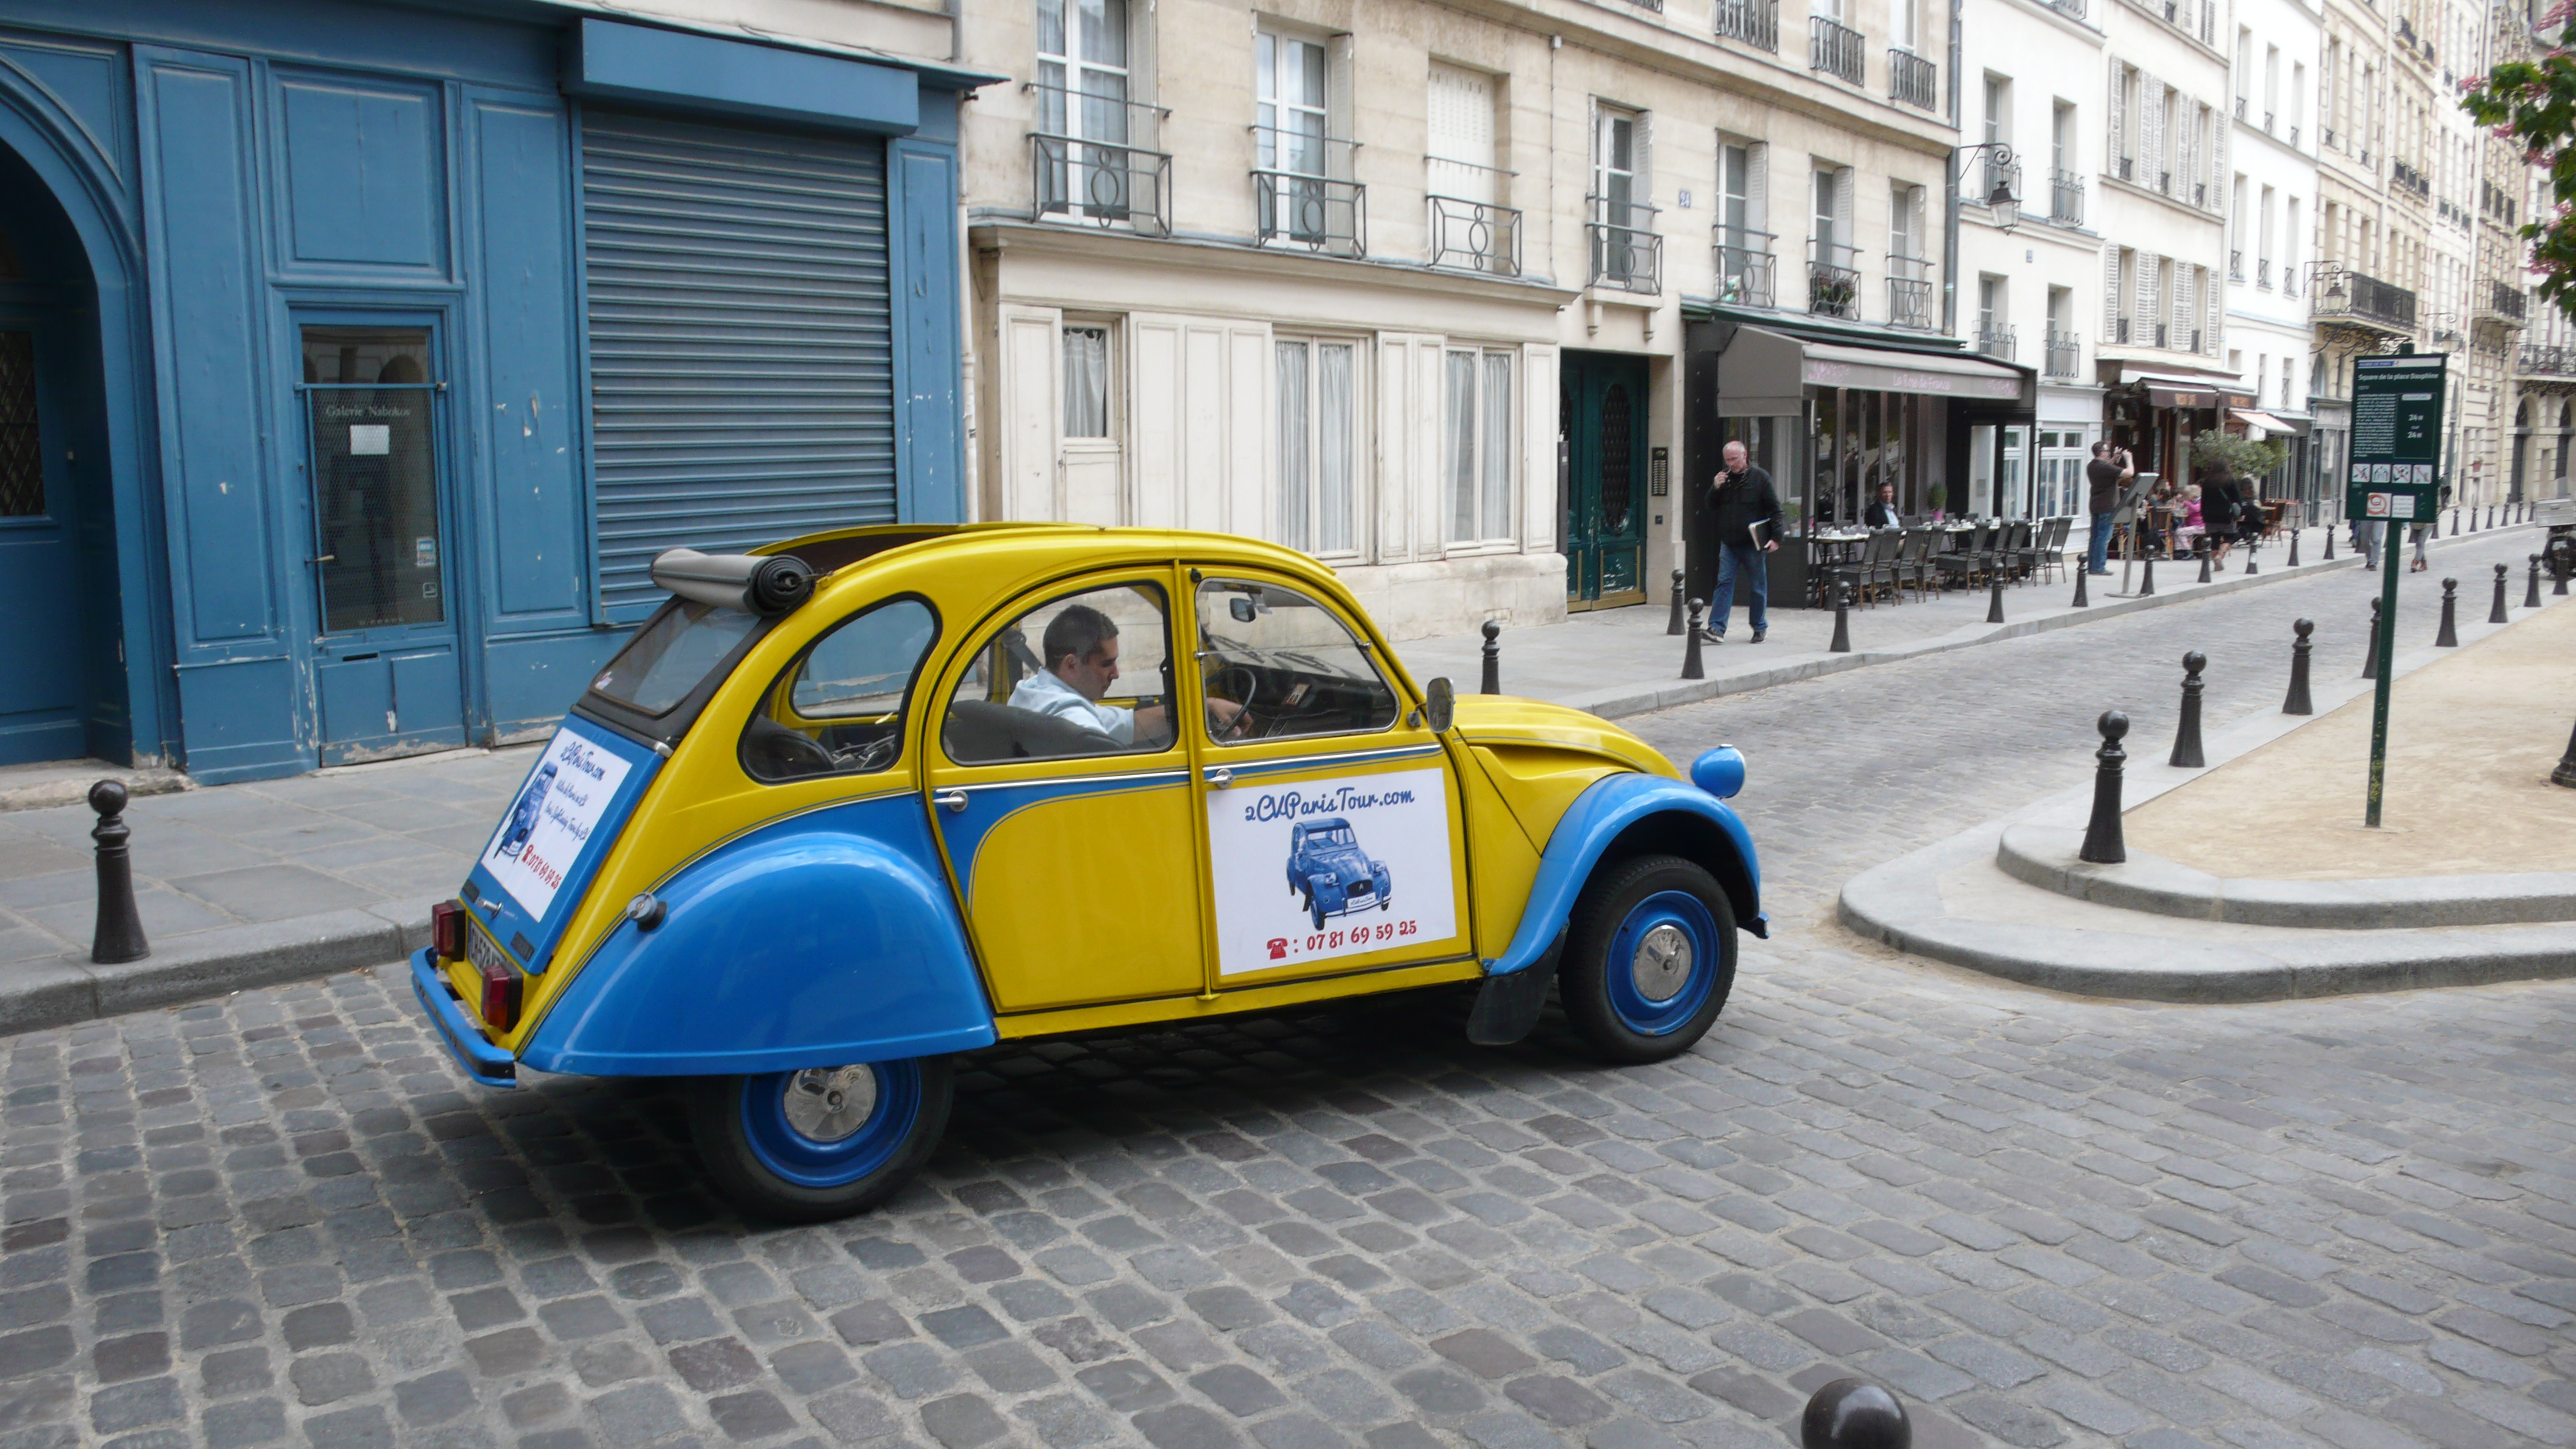 2CVParisTour : Balades en 2CV à Paris! La Place Dauphine en 2CV